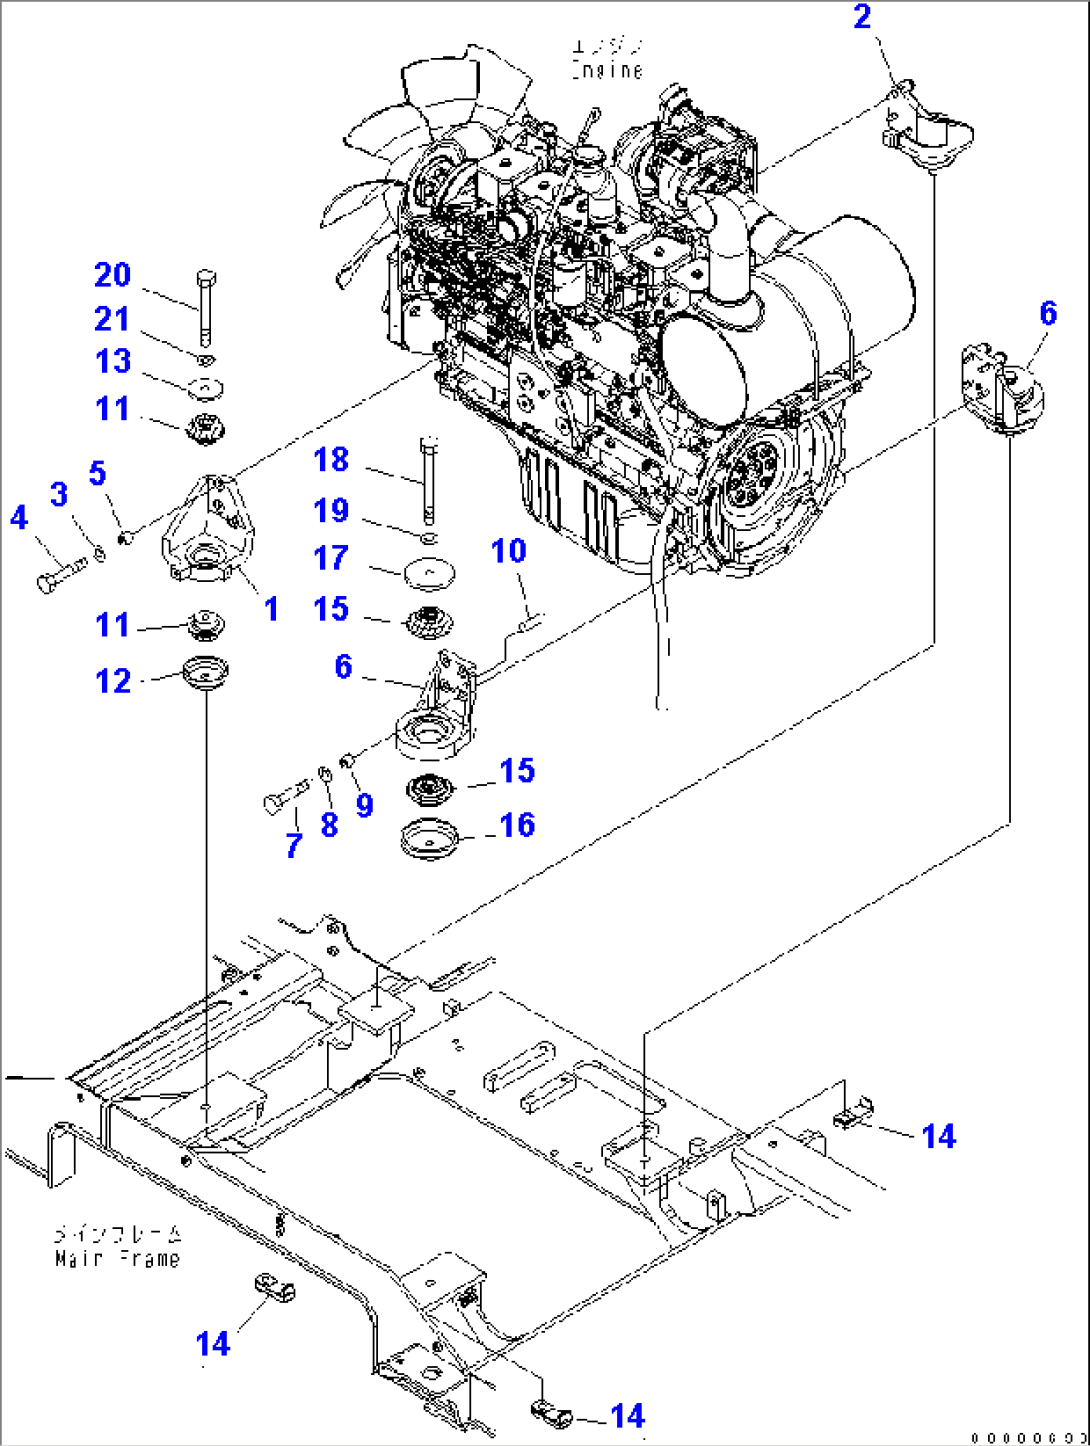 ENGINE MOUNT (BRACKET AND CUSHION)